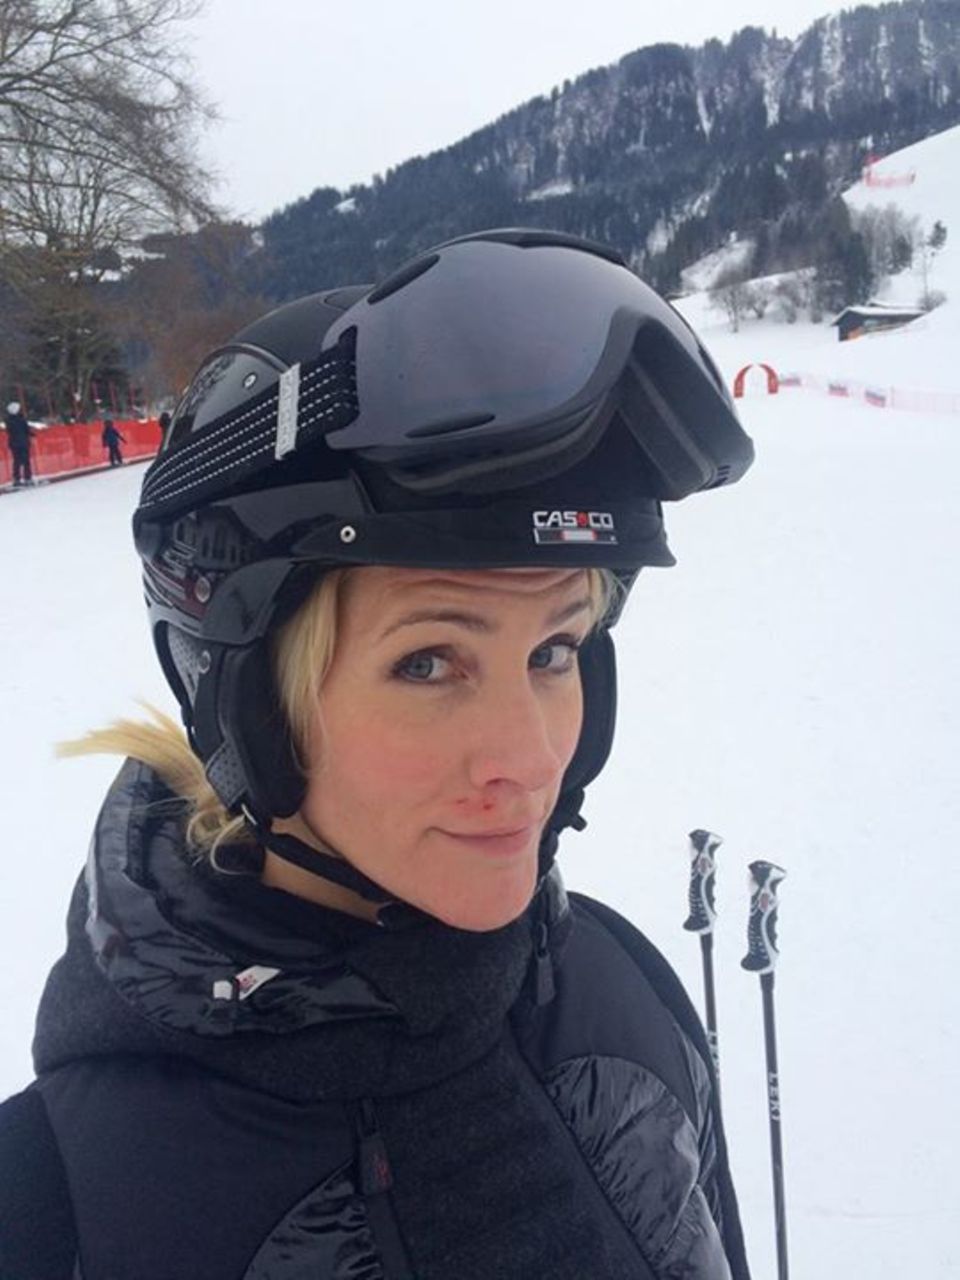 Moderatorin Judith Rakers hatte einen kleinen Skiunfall in Österreich. Auf Facebook teilt sie ein Foto mit ihren Blessuren im Gesicht.